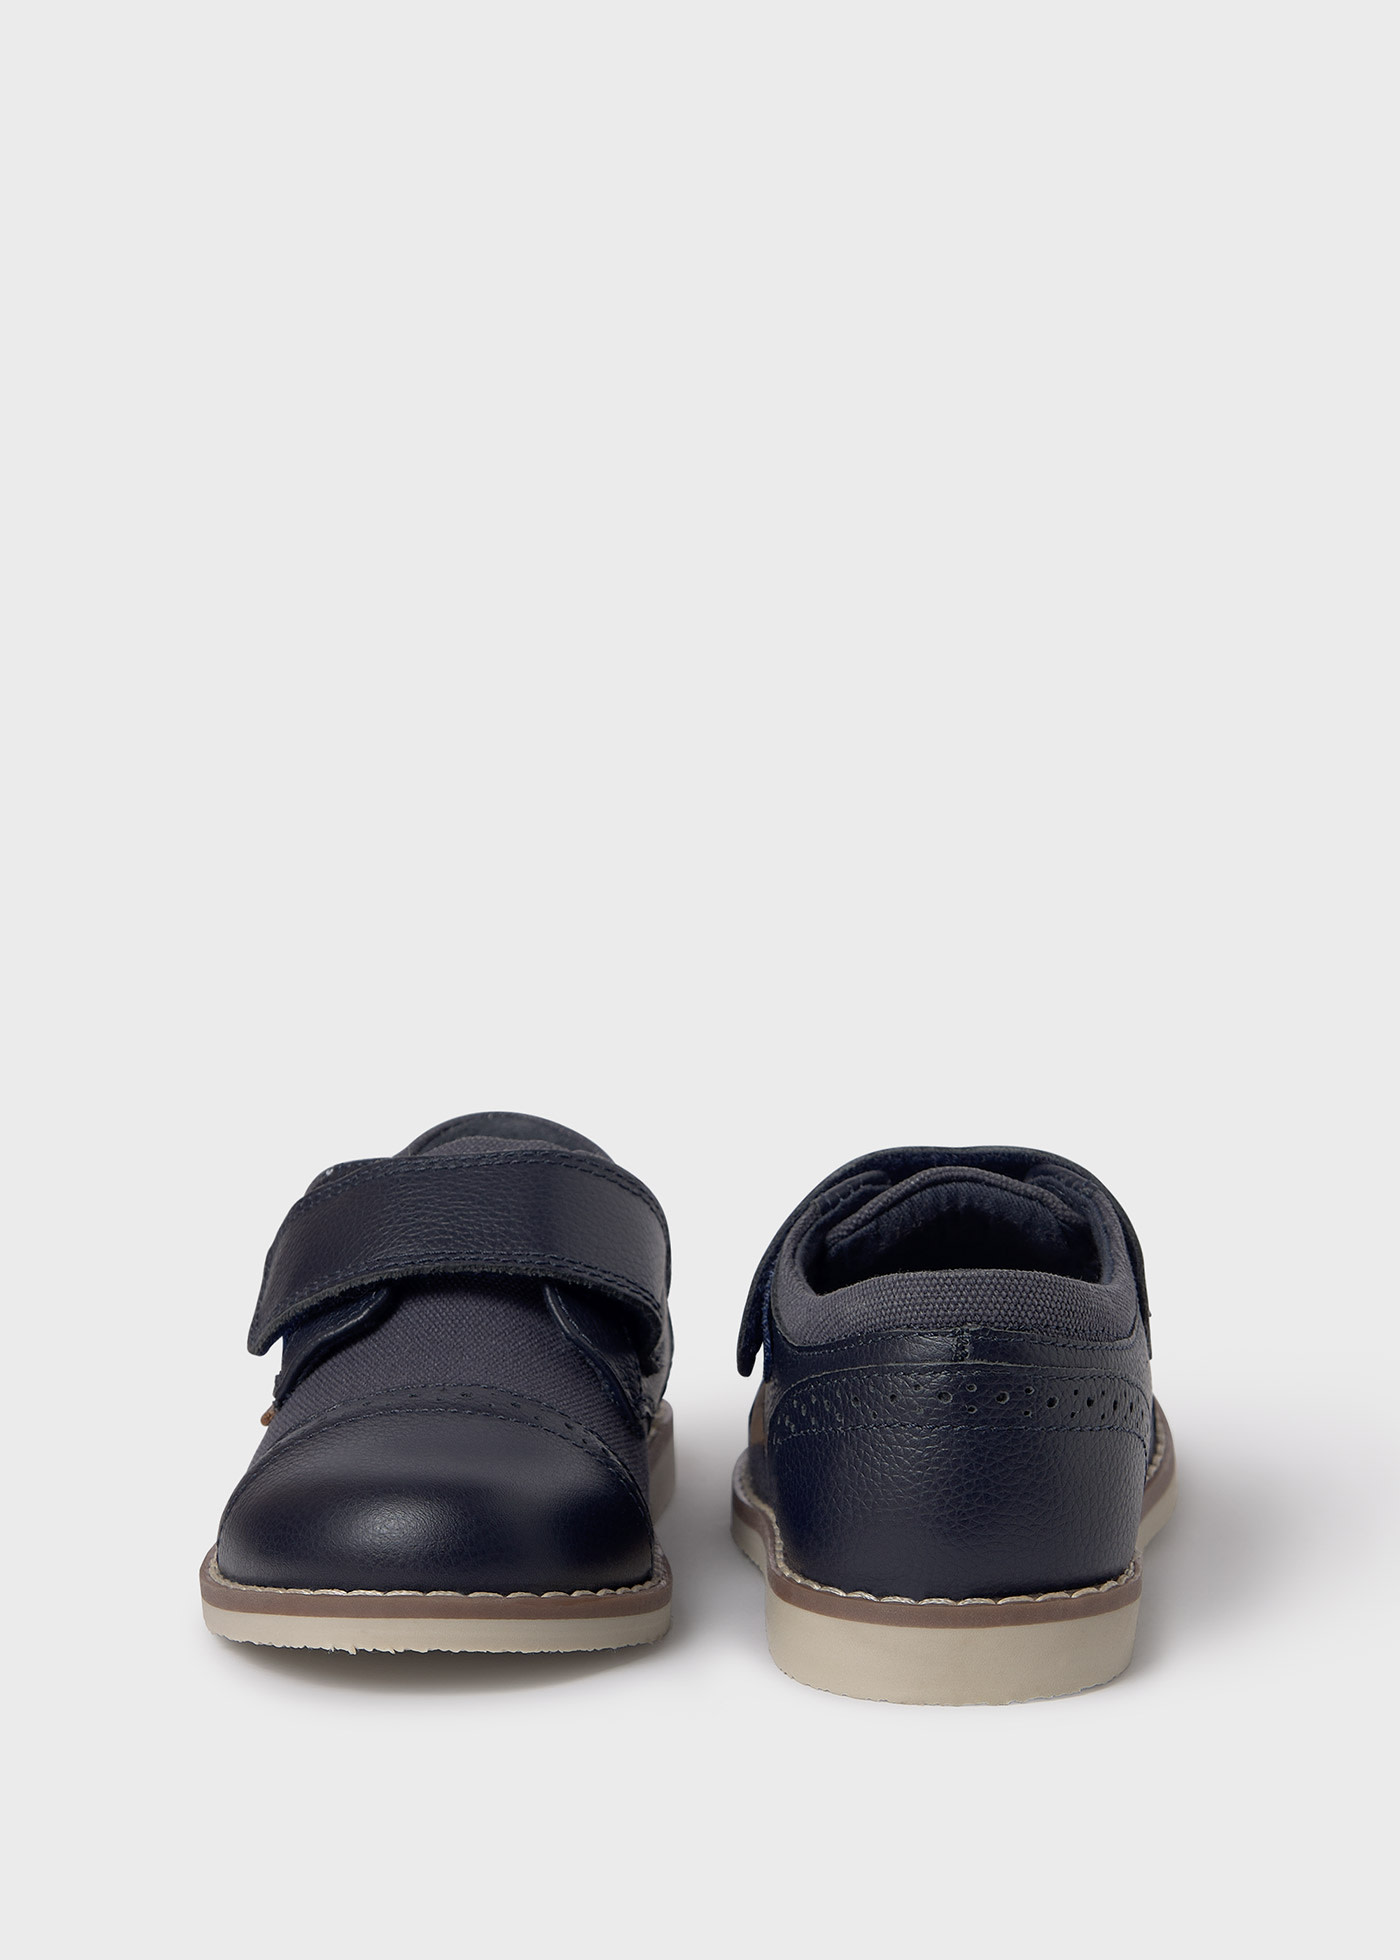 Schuhe Oxford kombiniert Leder Jungen